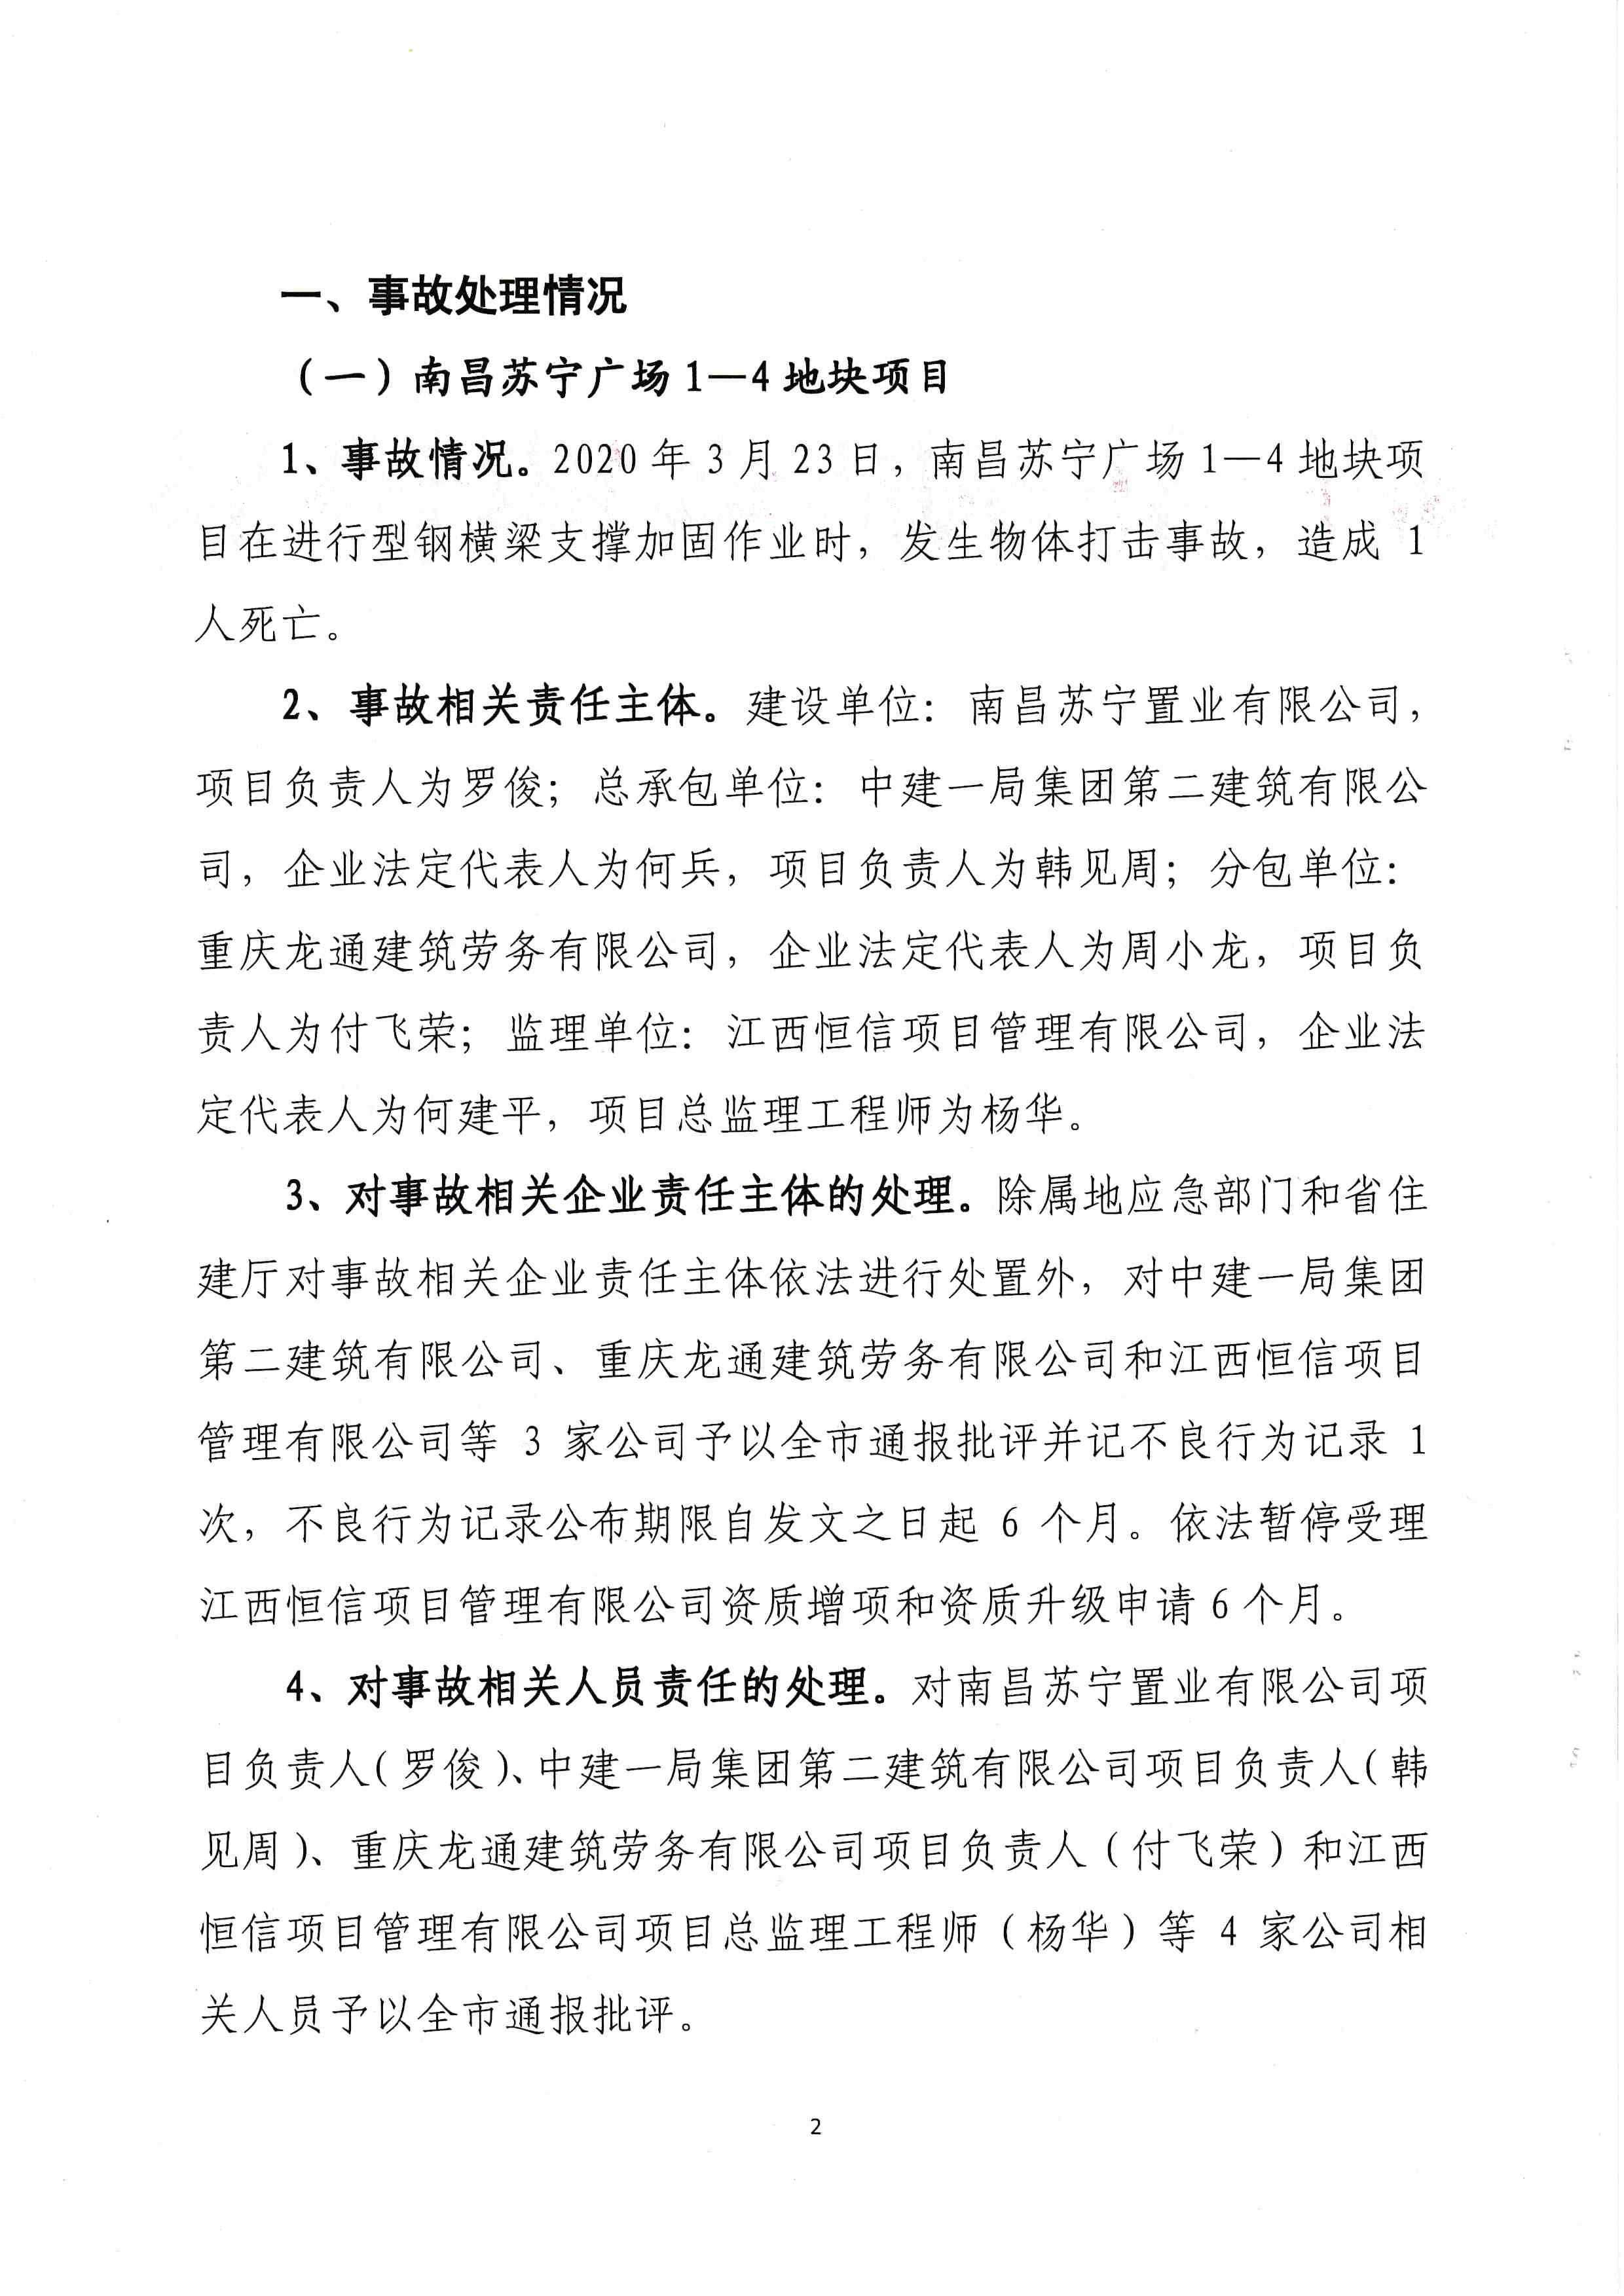 南昌住建局发布对南昌苏宁广场等6项目事故的通报